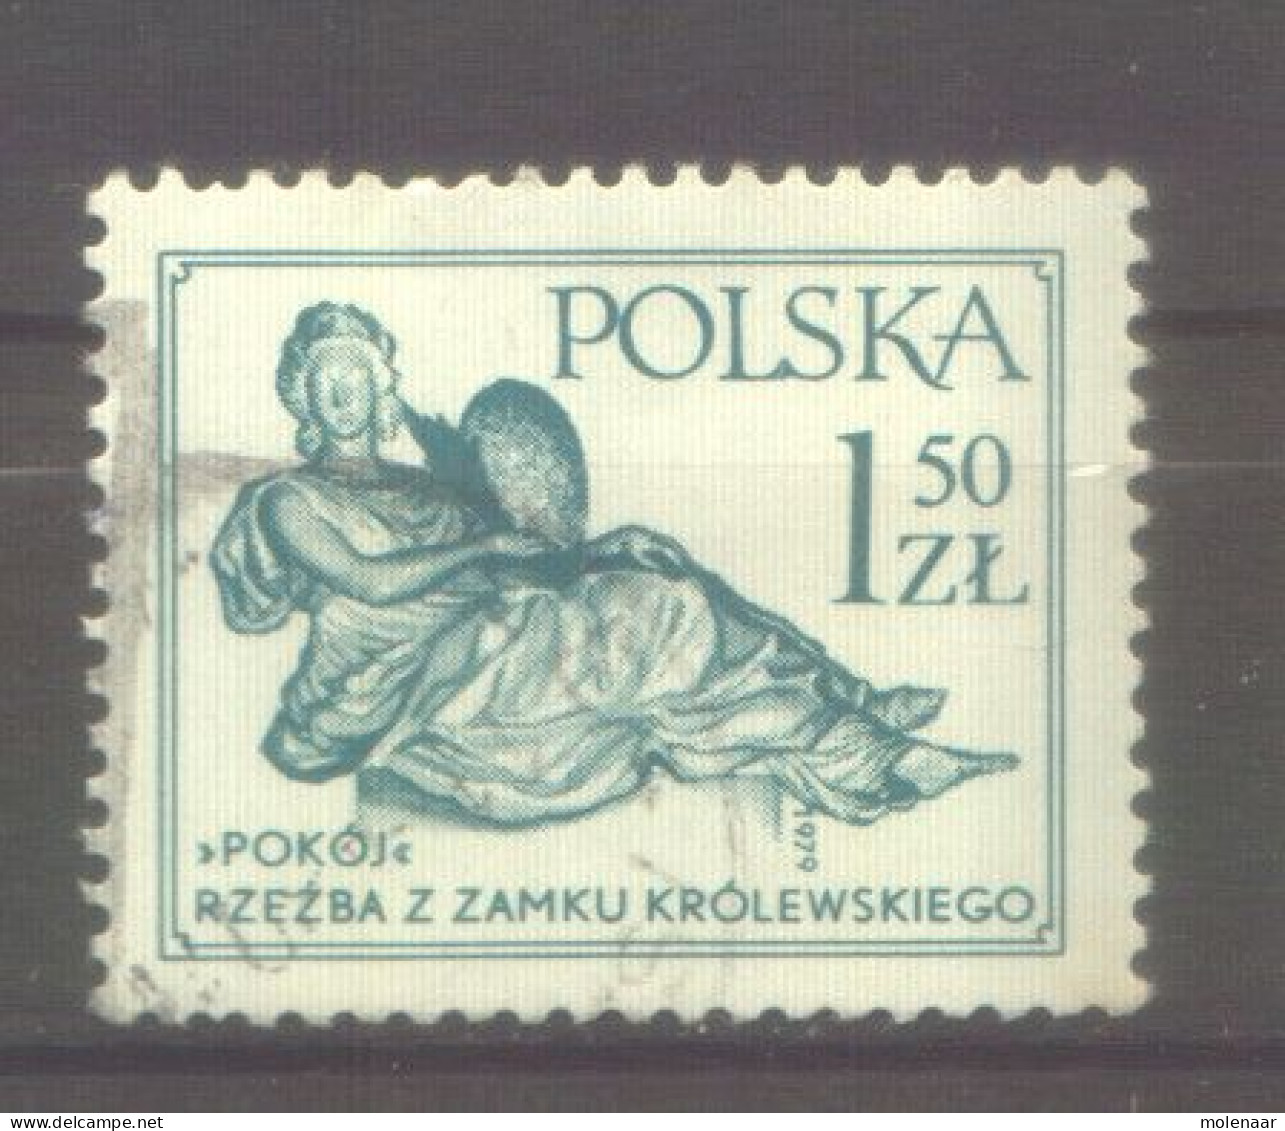 Postzegels > Europa > Polen > 1944-.... Republiek > 1971-80 > Gebruikt No. 2625  (12165) - Usati